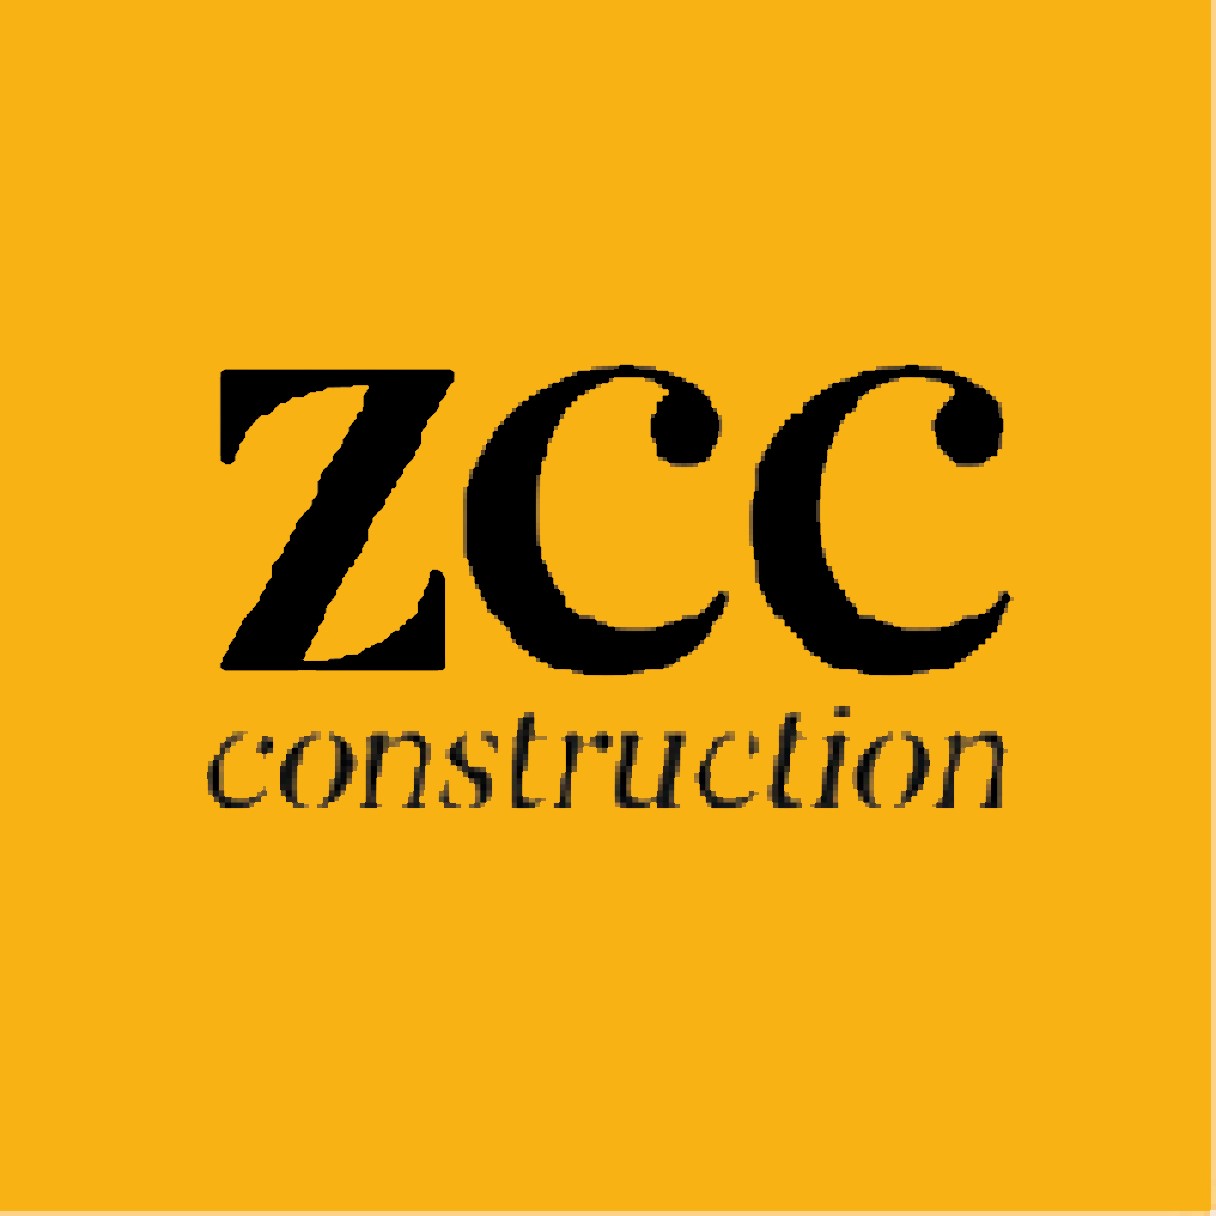 ZCC Construction